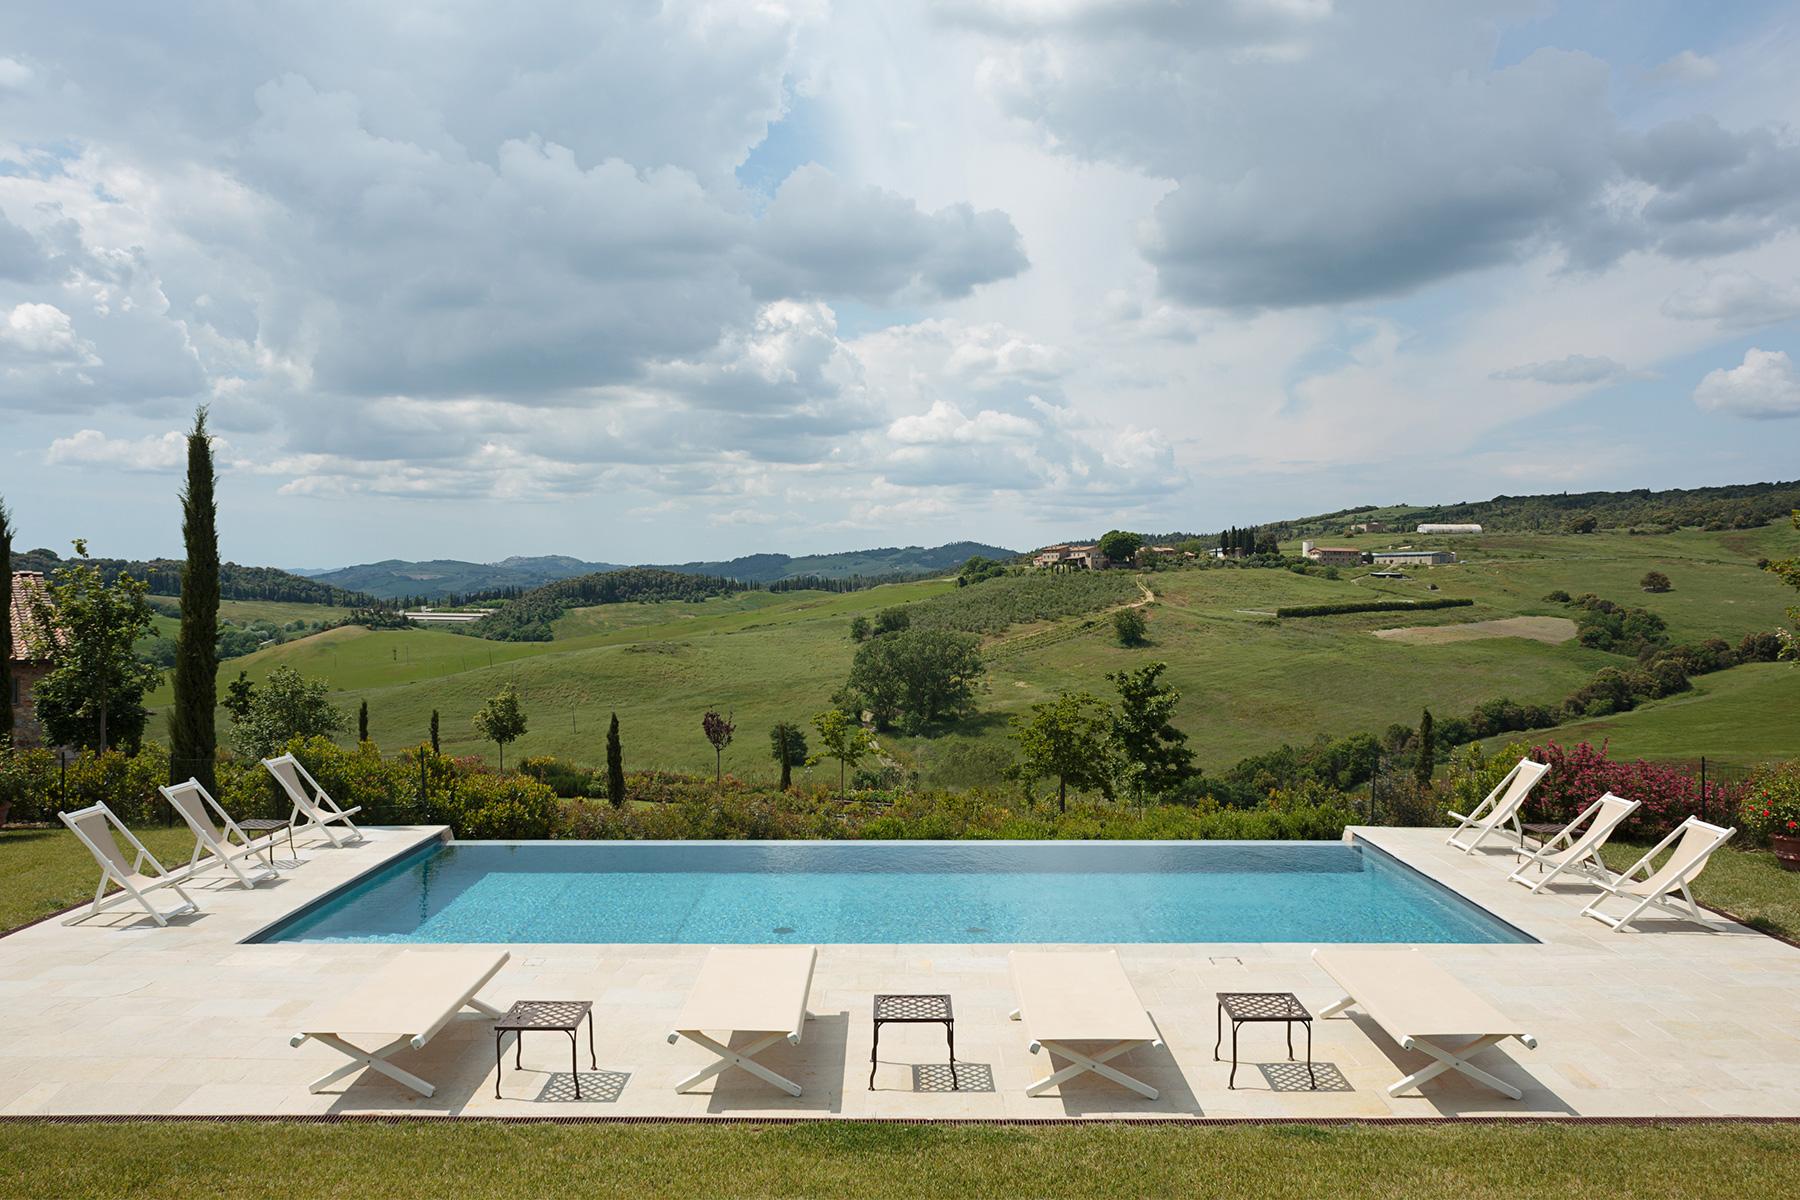 Превосходное поместье с бассейном на тосканских холмах недалеко от Сиены, Италия - 22